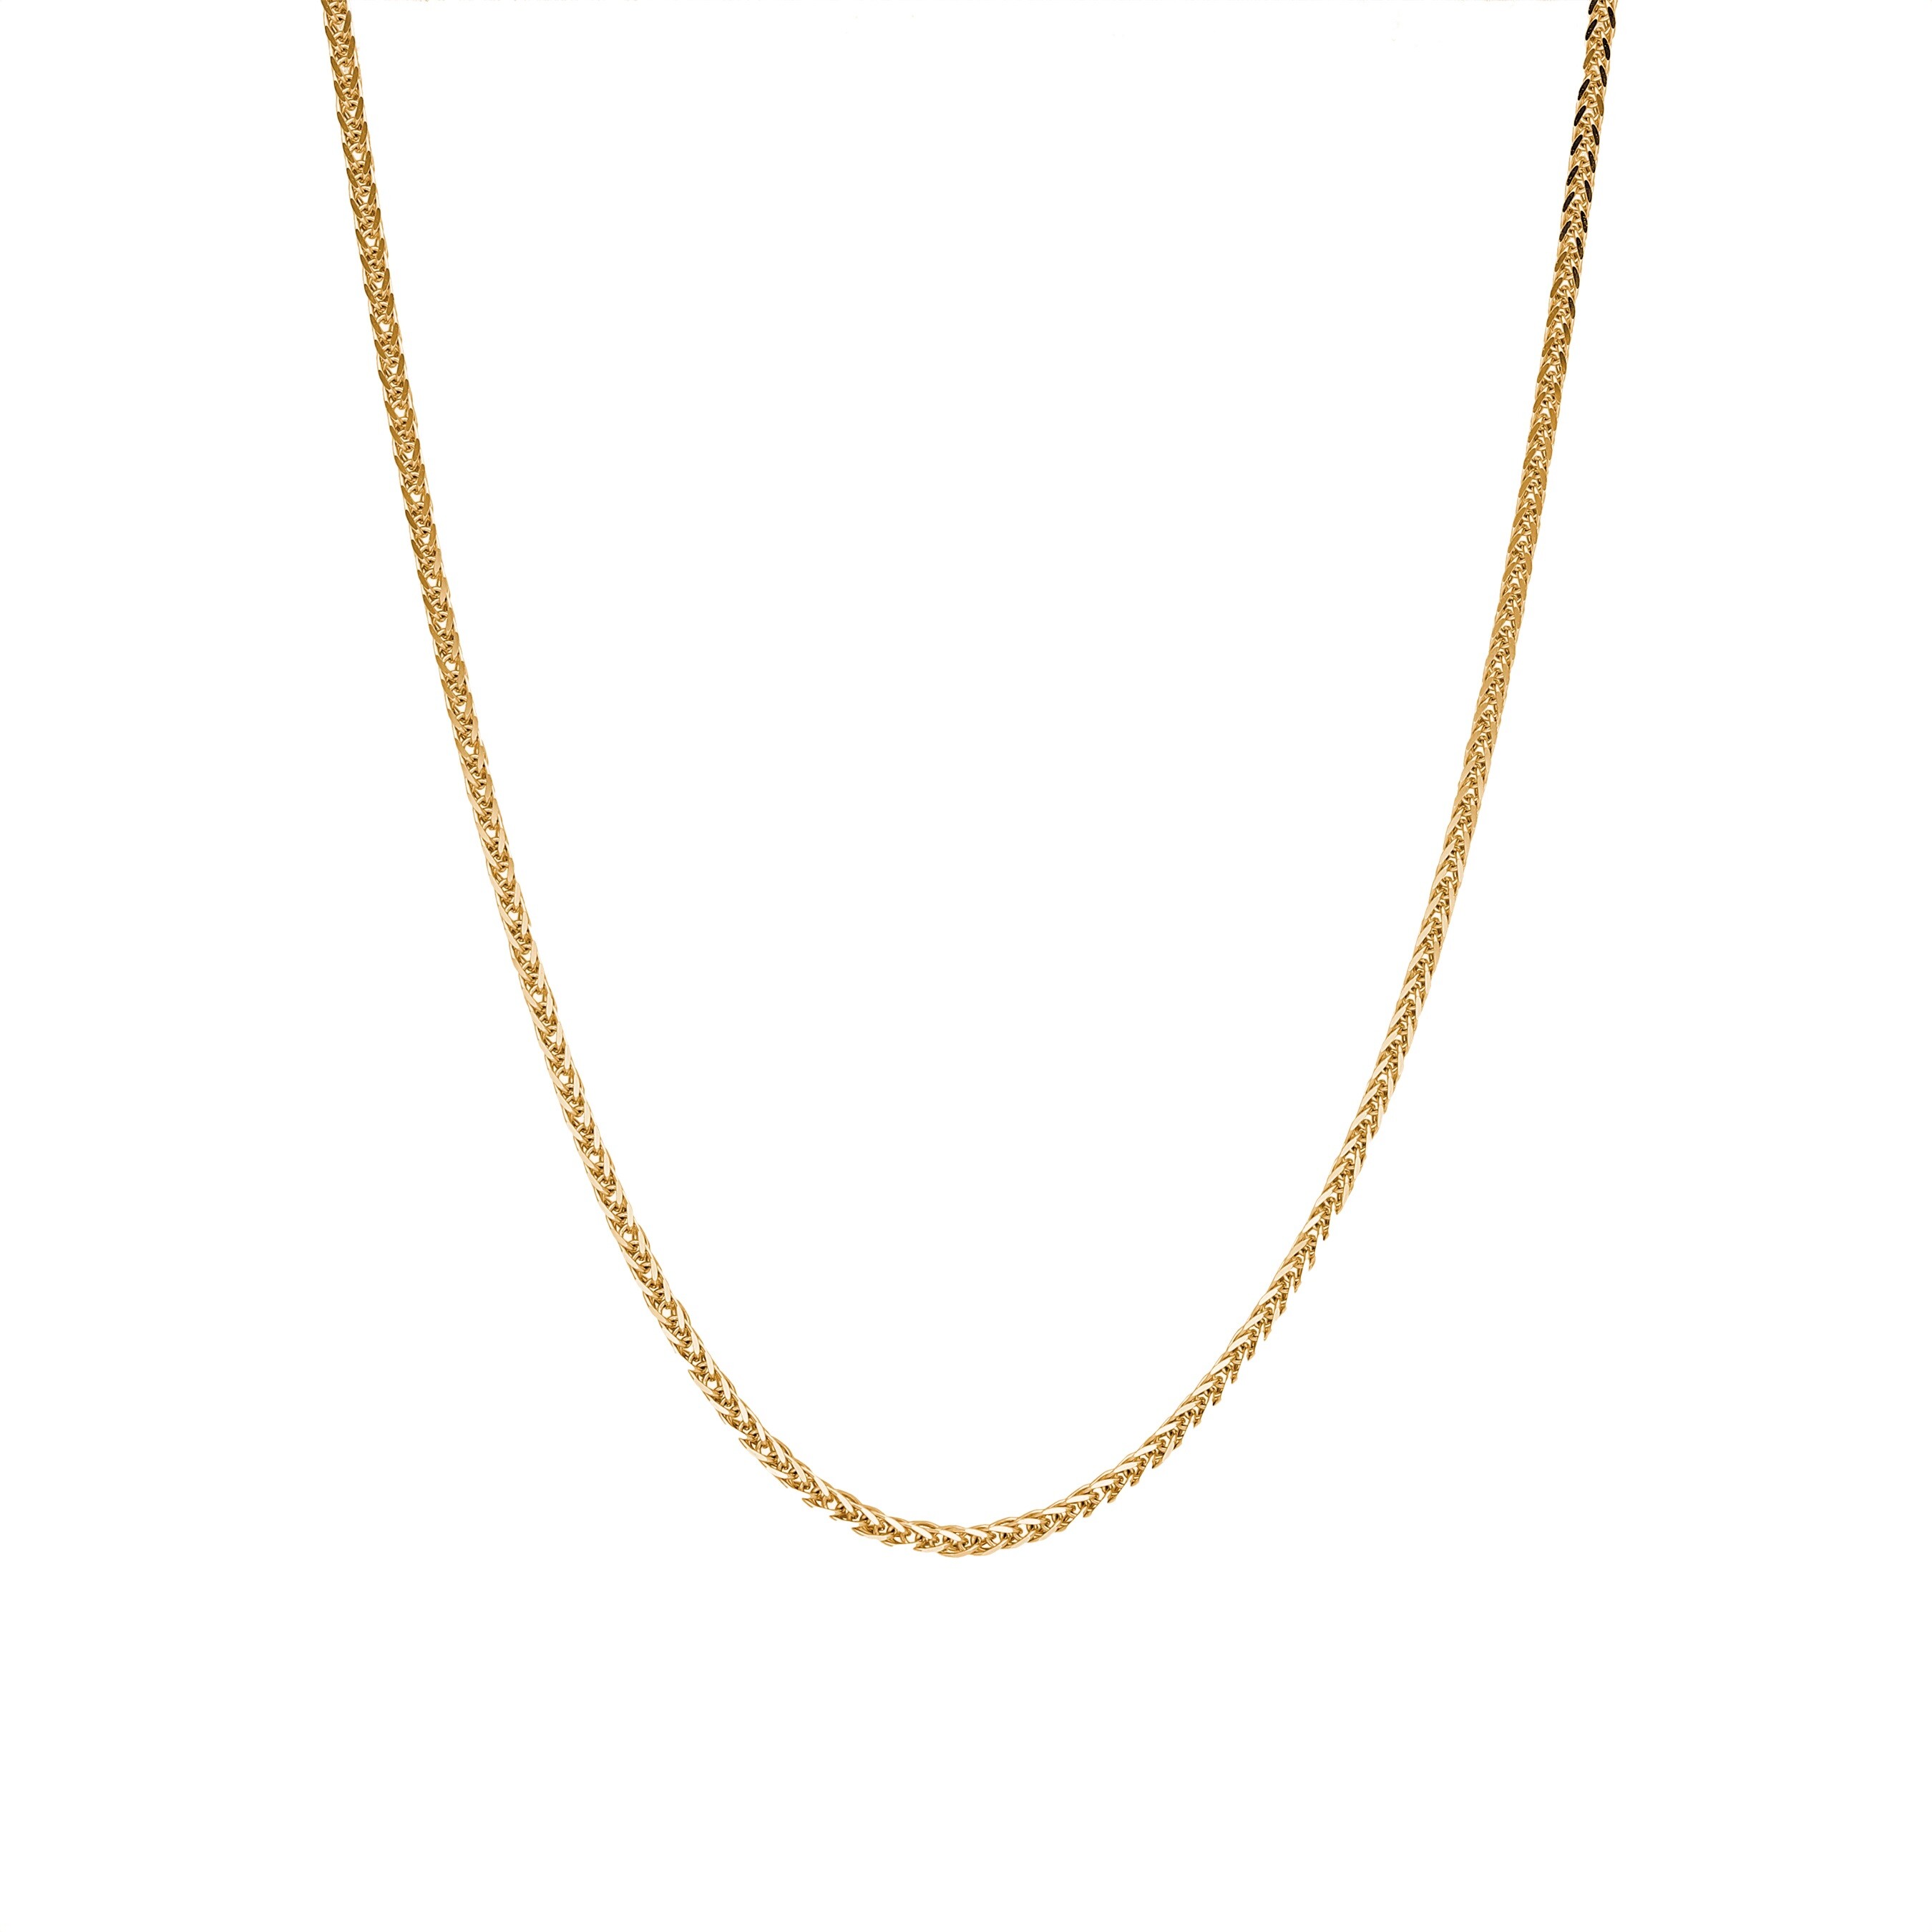 Łańcuszek złoty, splot lisi ogon 1mm, długość 42 cm, próba 585